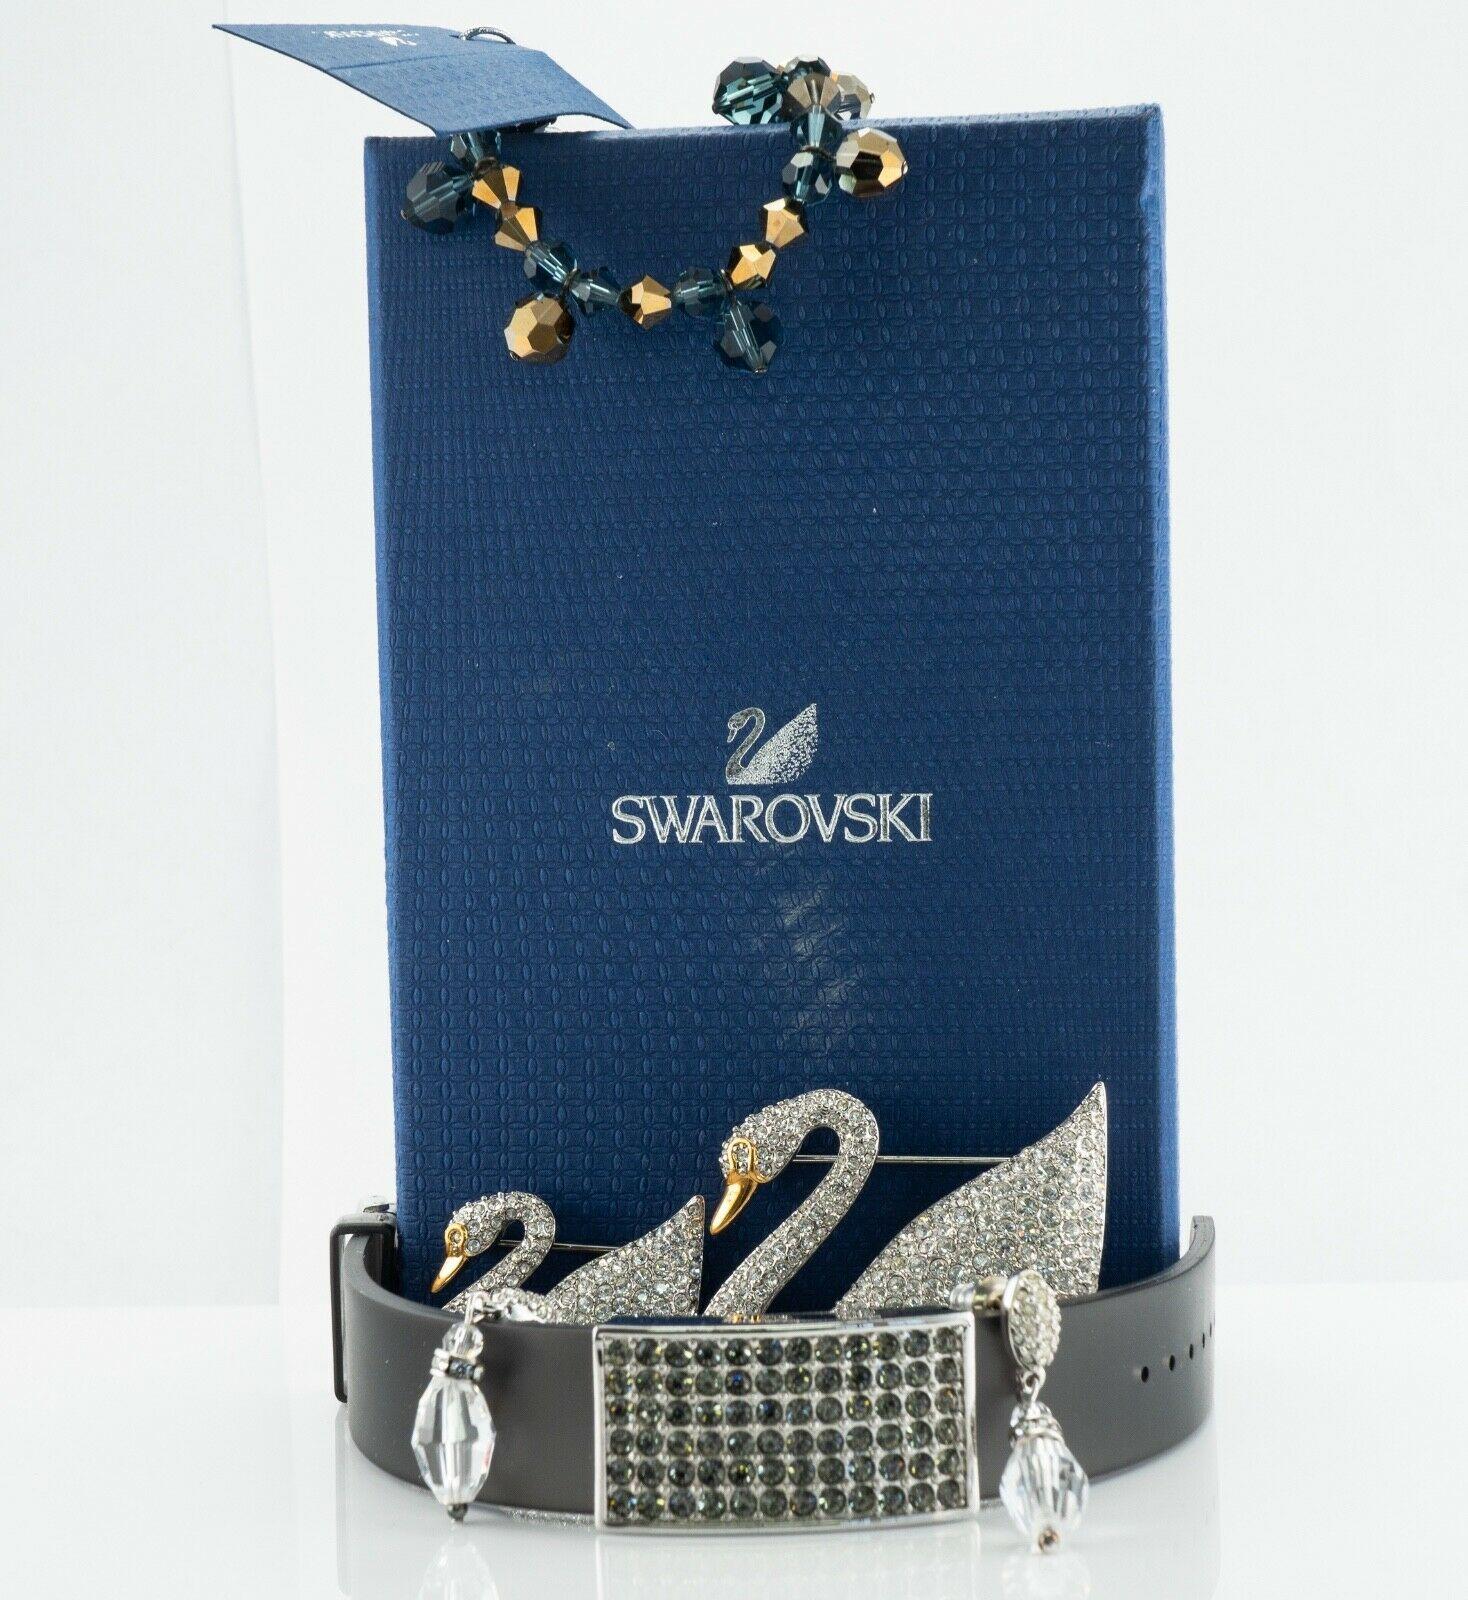 Bei diesem Los handelt es sich um authentischen Swarovski-Schmuck: zwei Broschen oder Pins, zwei Armbänder und Ohrringe. Zwei Schwäne sind unterschiedlich groß, einer ist 2,25